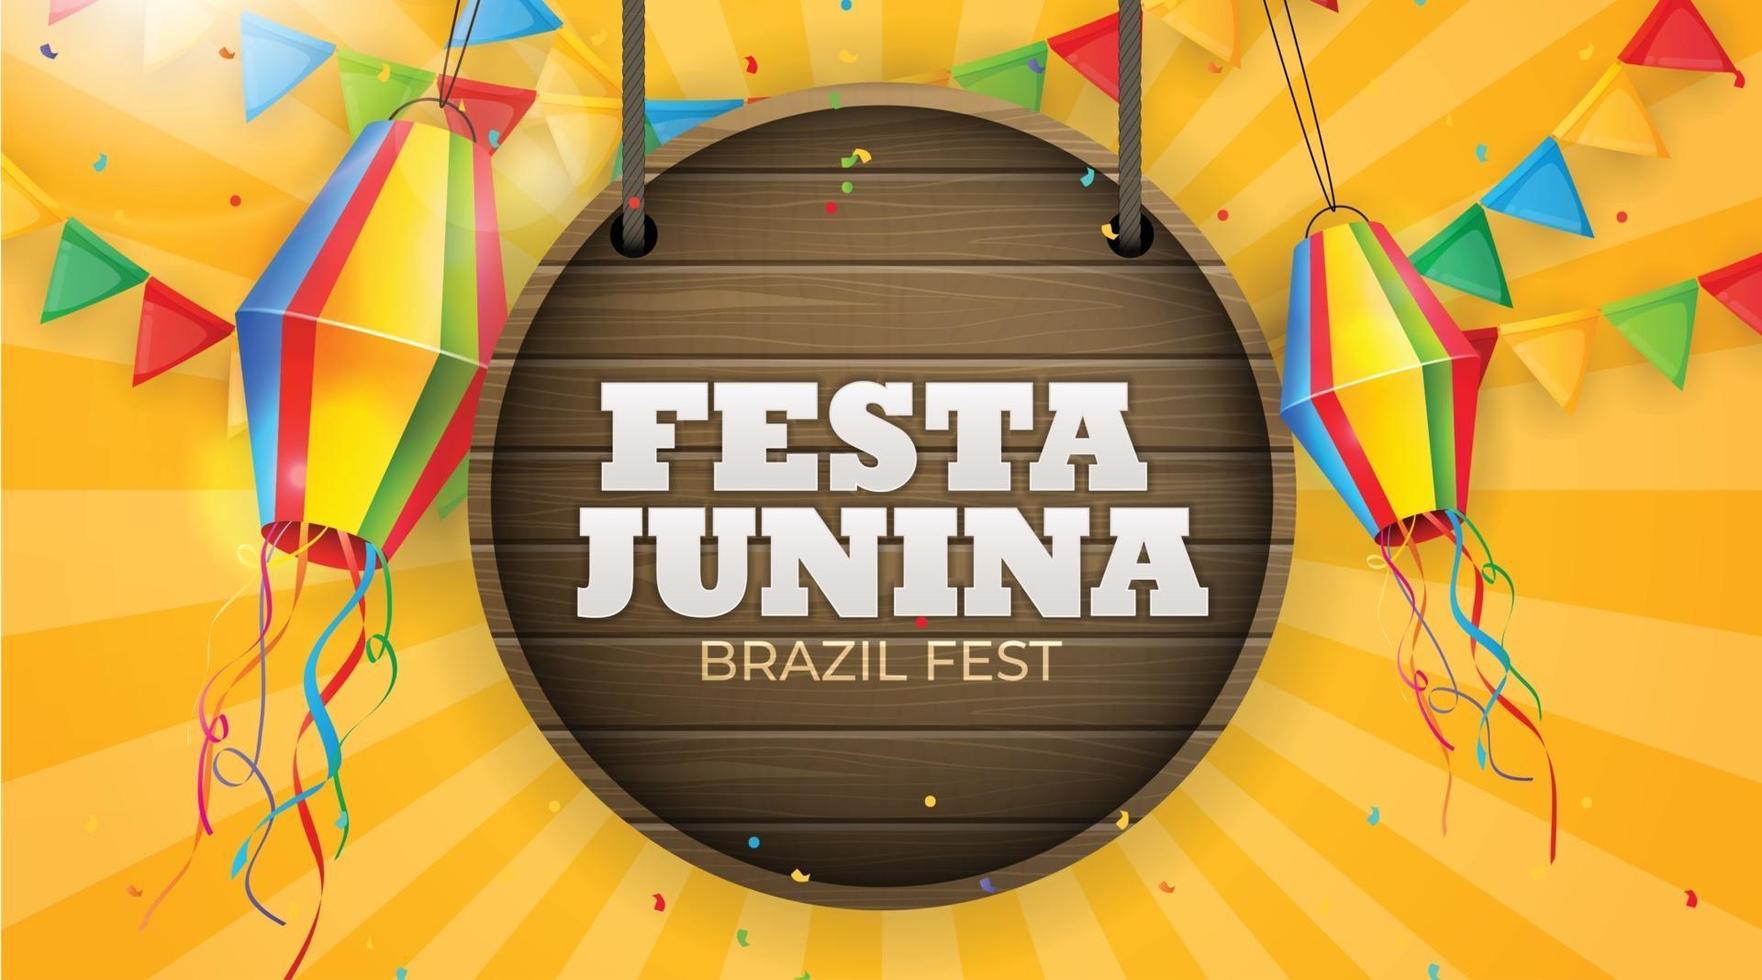 Fondo de fiesta junina con banderas del partido, linterna. Fondo del festival de junio de brasil para tarjeta de felicitación, invitación de vacaciones. ilustración vectorial vector